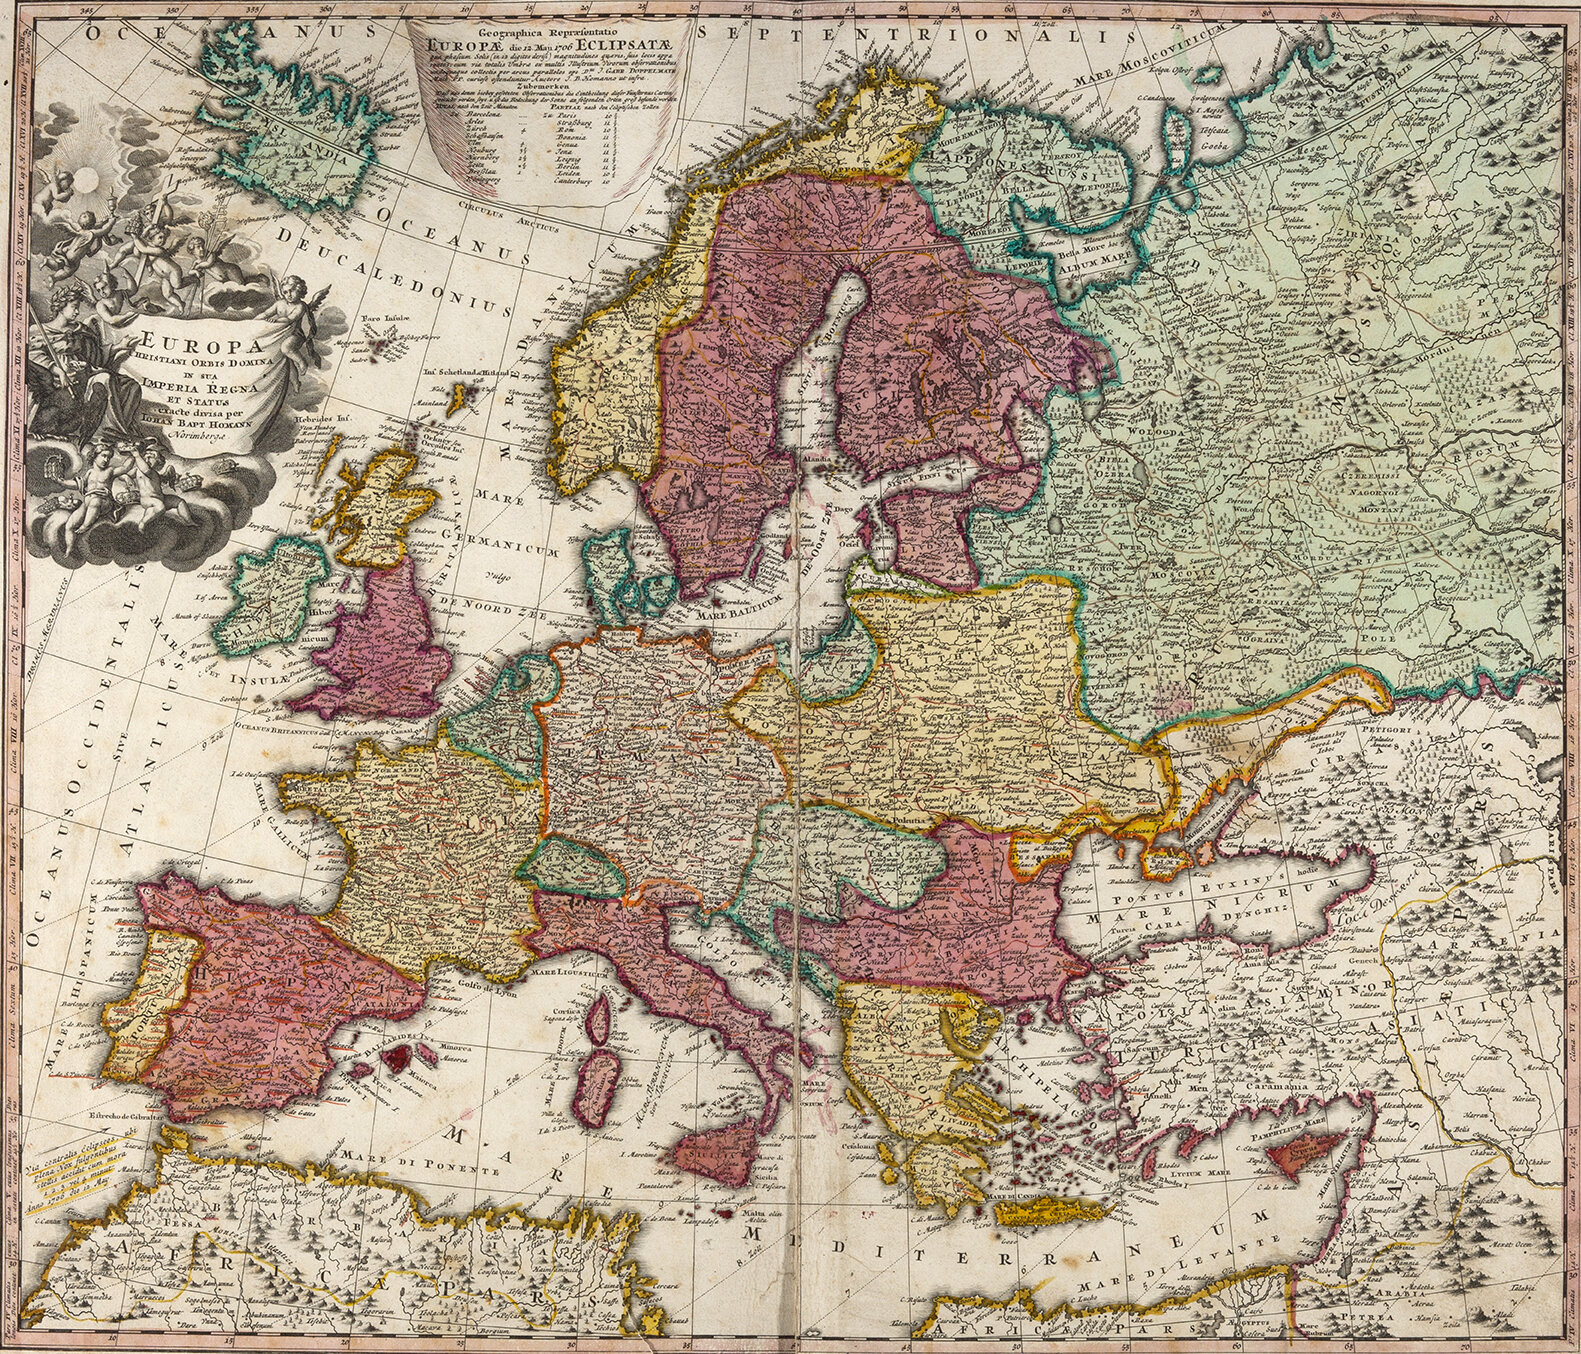 Karte aus "Atlas von 40 Karten" von Johann Baptist Homann.